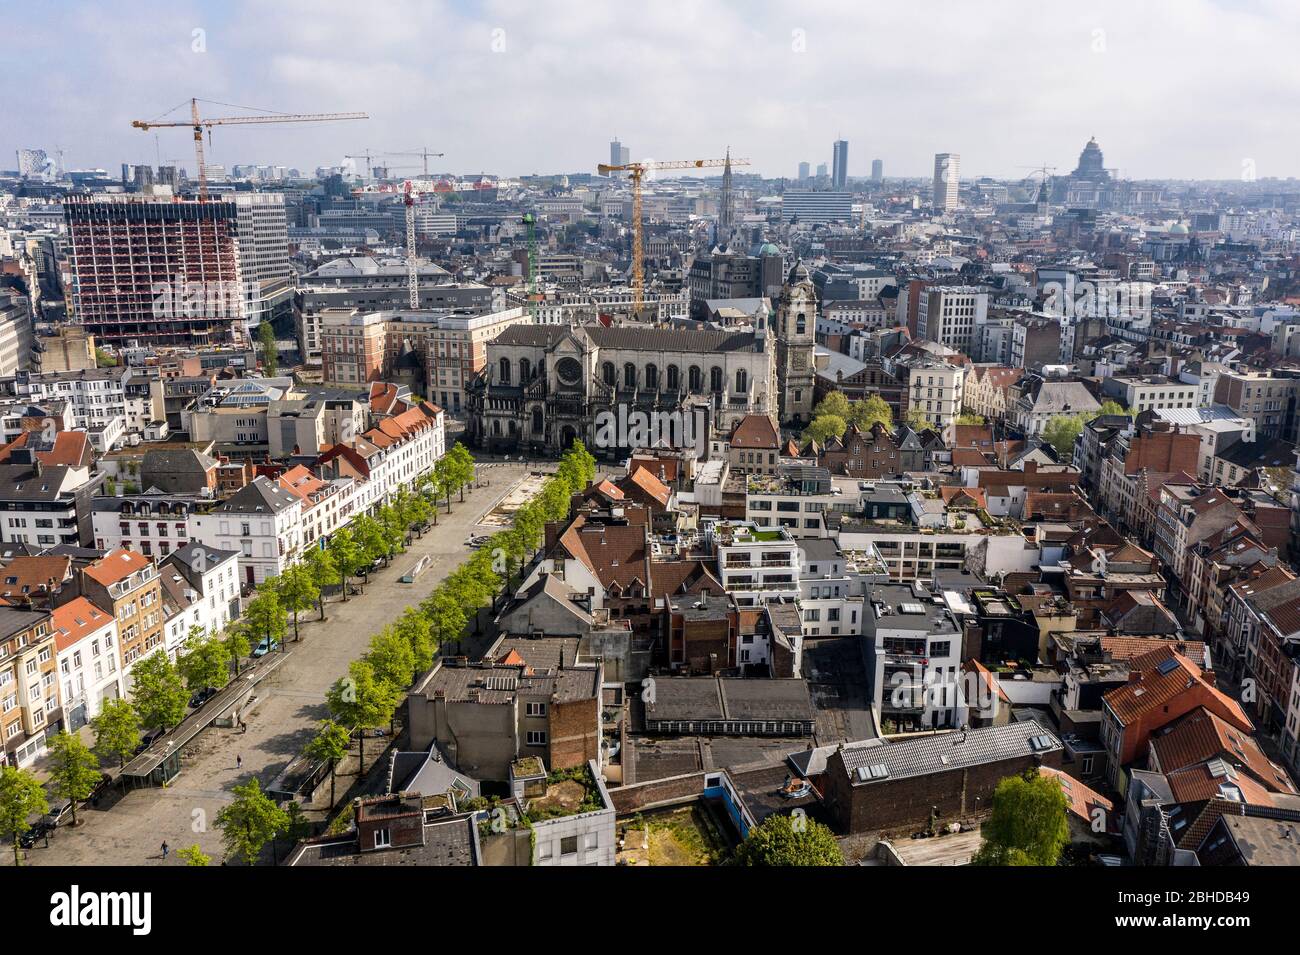 Bruxelles, Belgique - 18 avril 2020 - vue aérienne sur les quais aux briques et l'église Sainte-Catherine, vieux et populaire cratère à Bruxelles, vue pendant les confites Banque D'Images